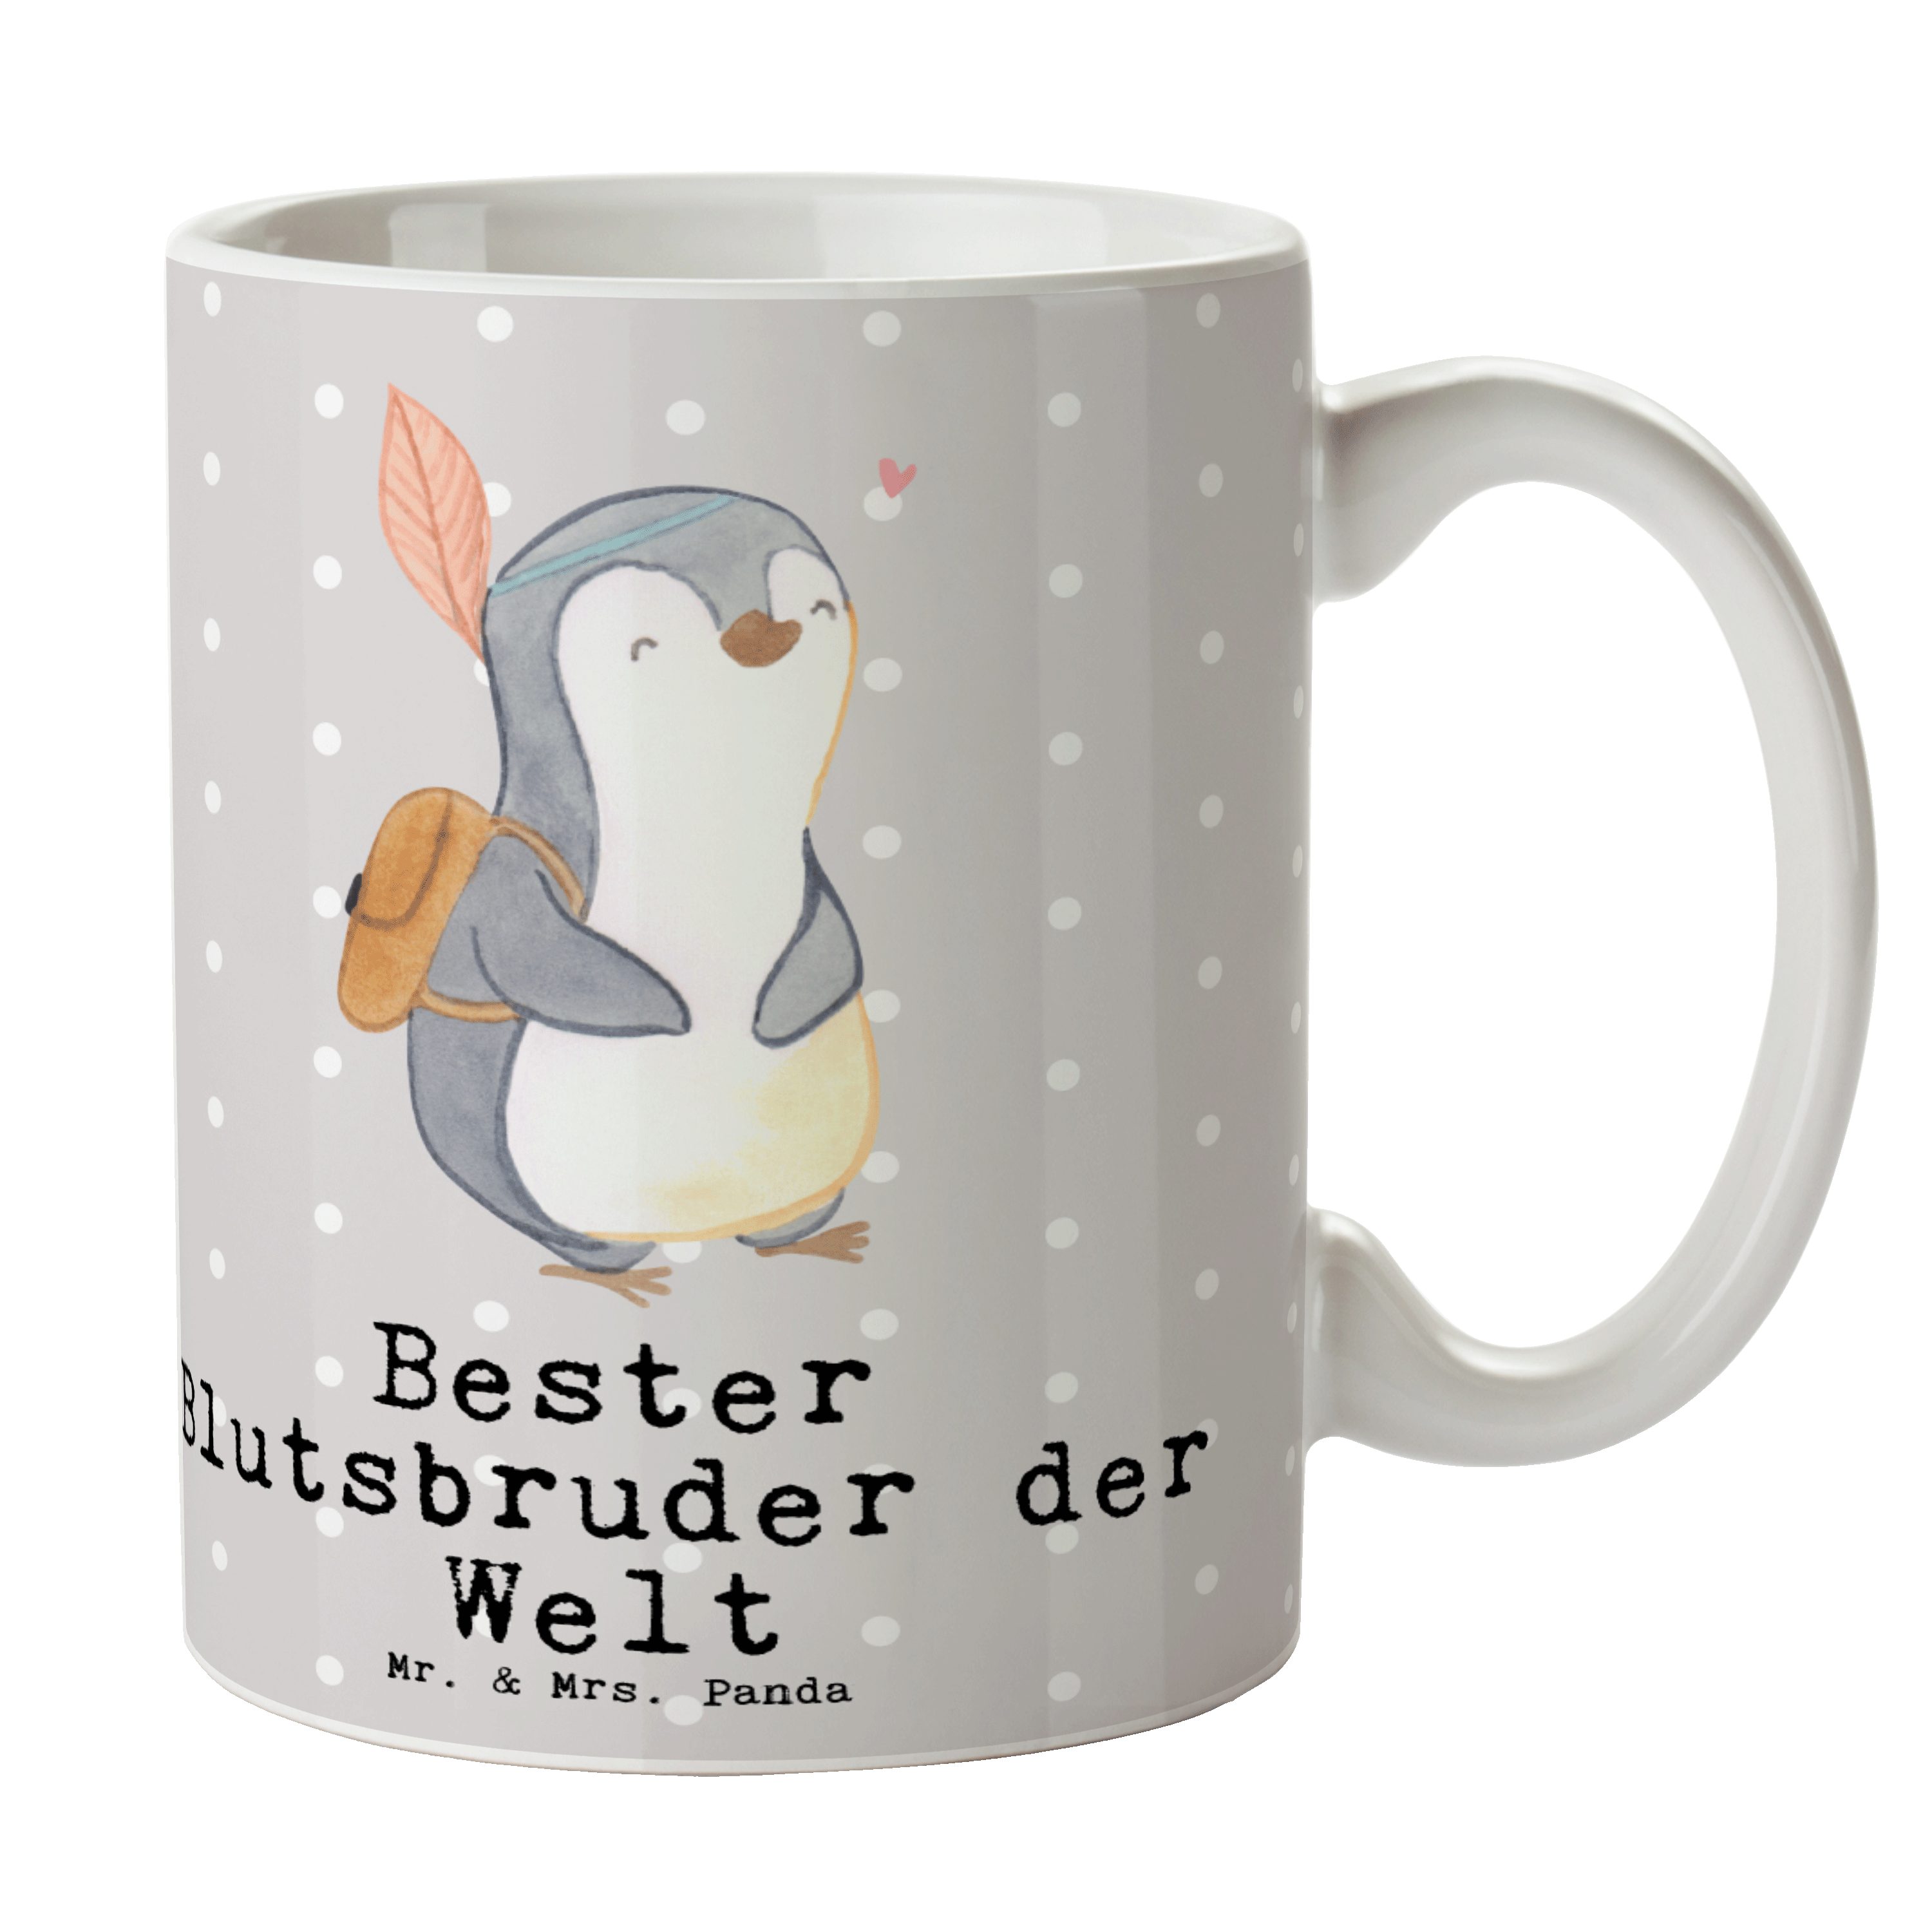 Mr. & Mrs. Panda Tasse Pinguin Bester Blutsbruder der Welt - Grau Pastell - Geschenk, Geschw, Keramik